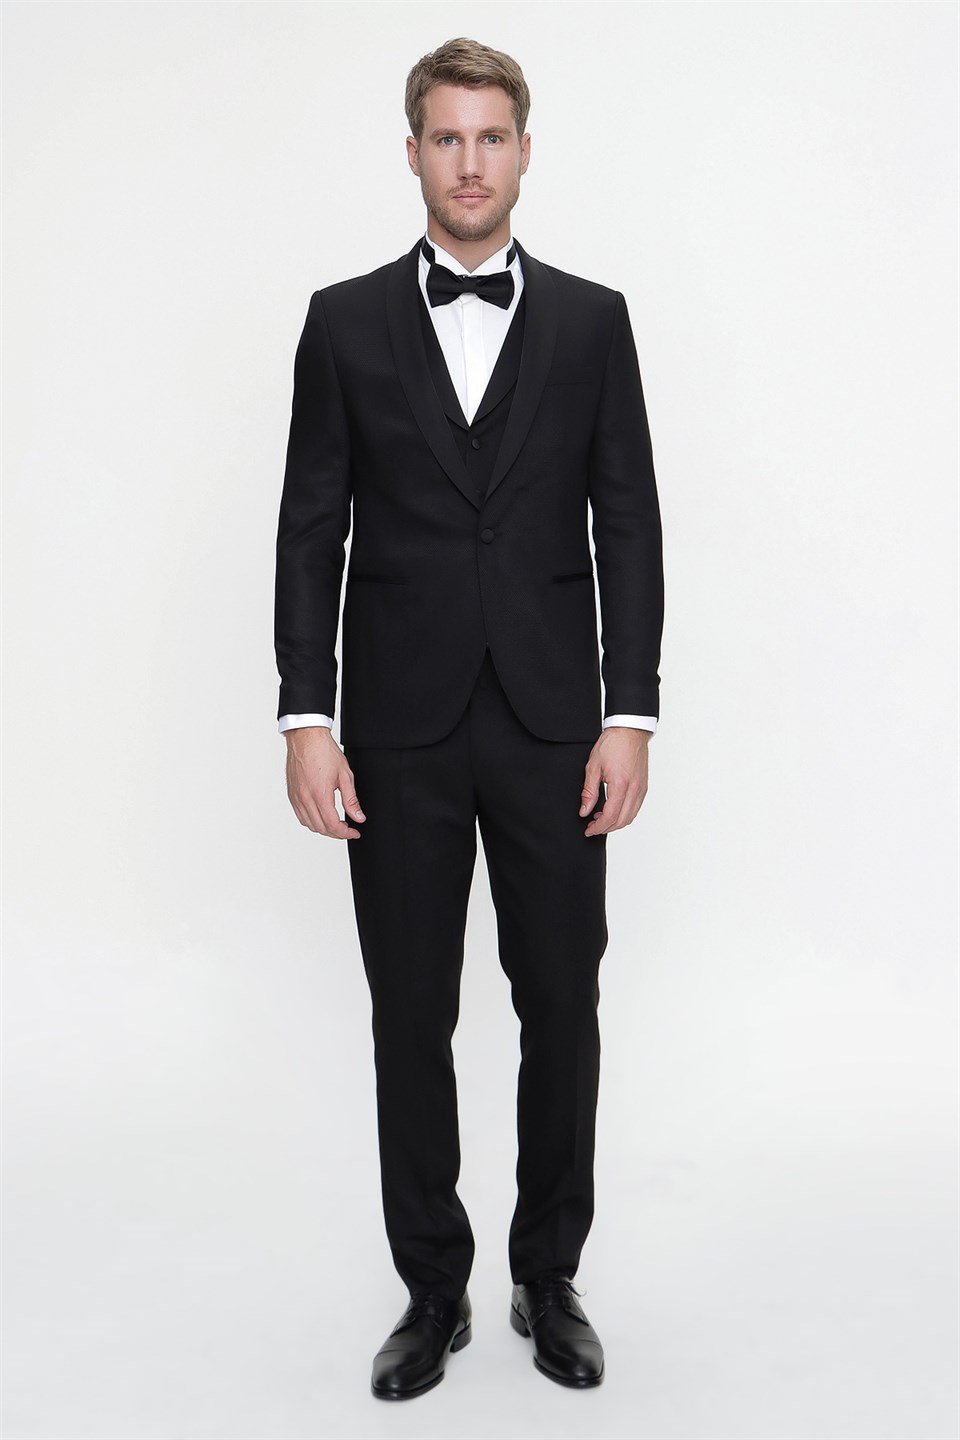 Men's Black Wedding Suit